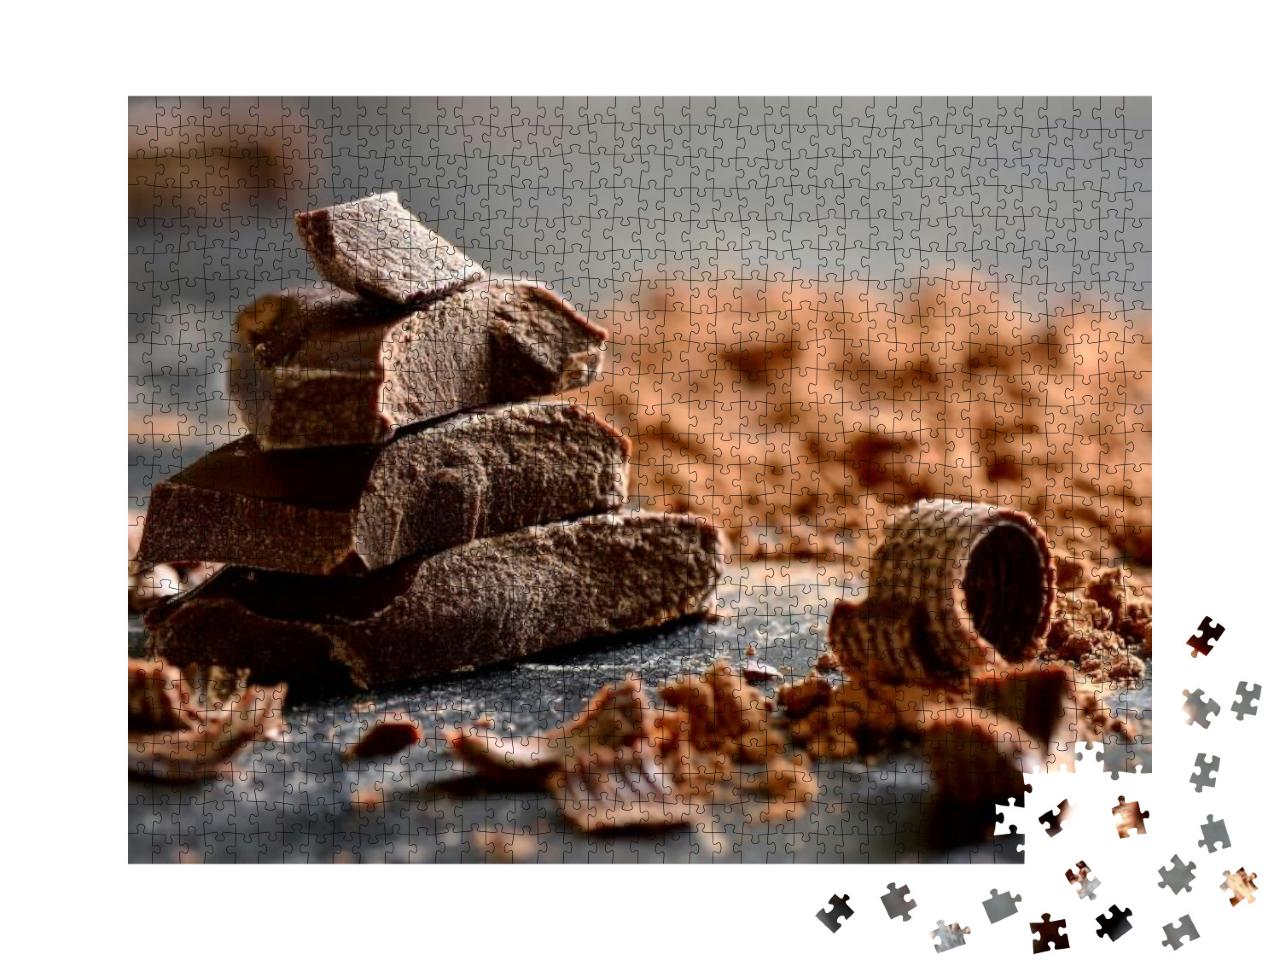 Puzzle 1000 Teile „Dunkle Schokolade in Stücken“